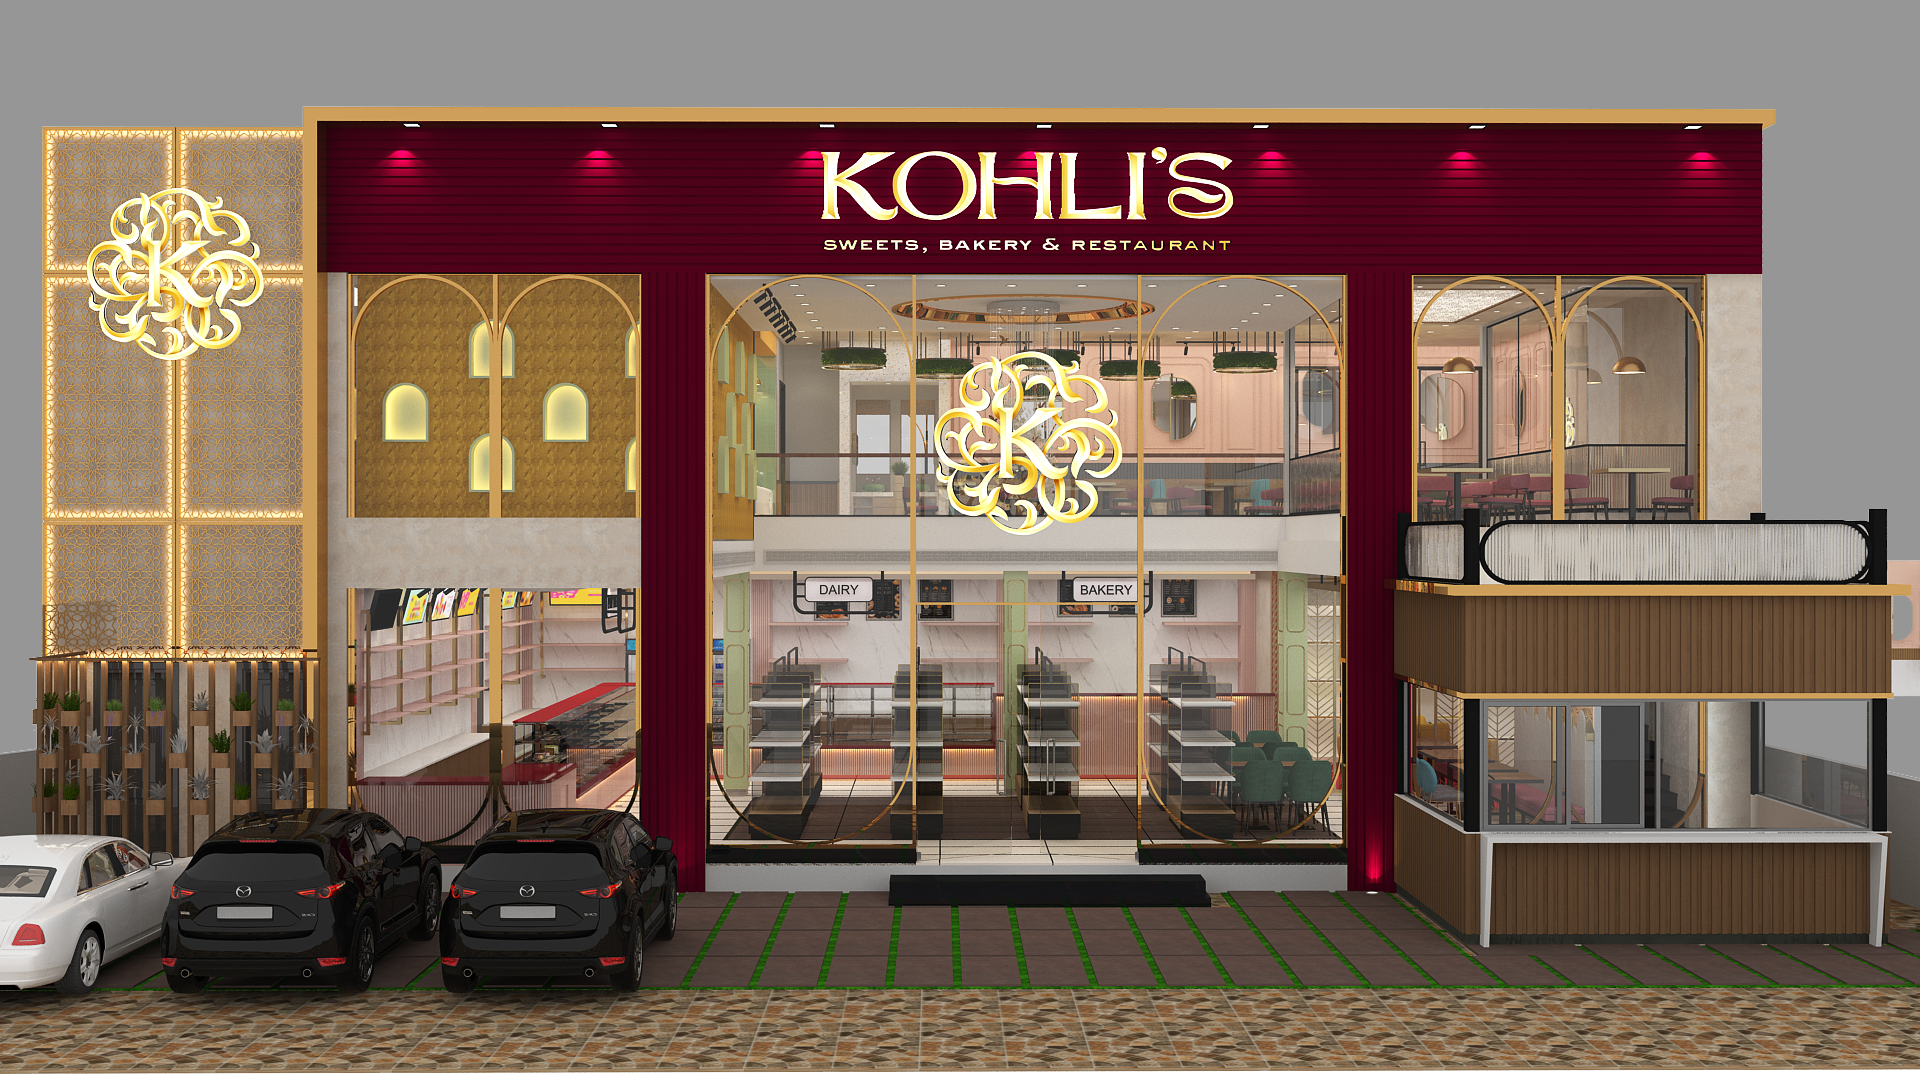 Kohli's Sweets, Bakery & Restaurant Brand Revamp by Vowels